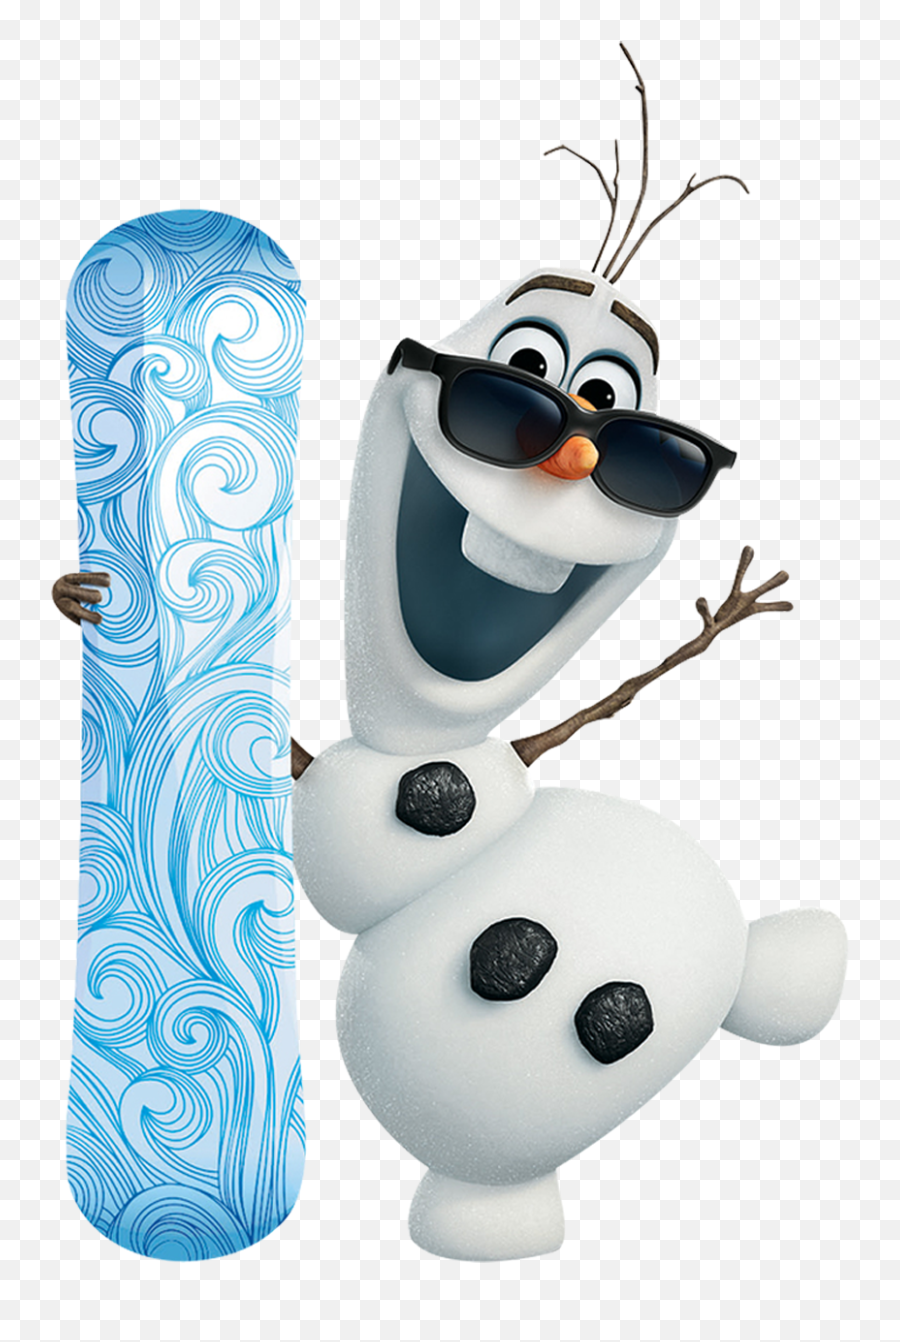 Frozen Olaf Transparent Background - Olaf Transparent Background Png,Olaf Transparent